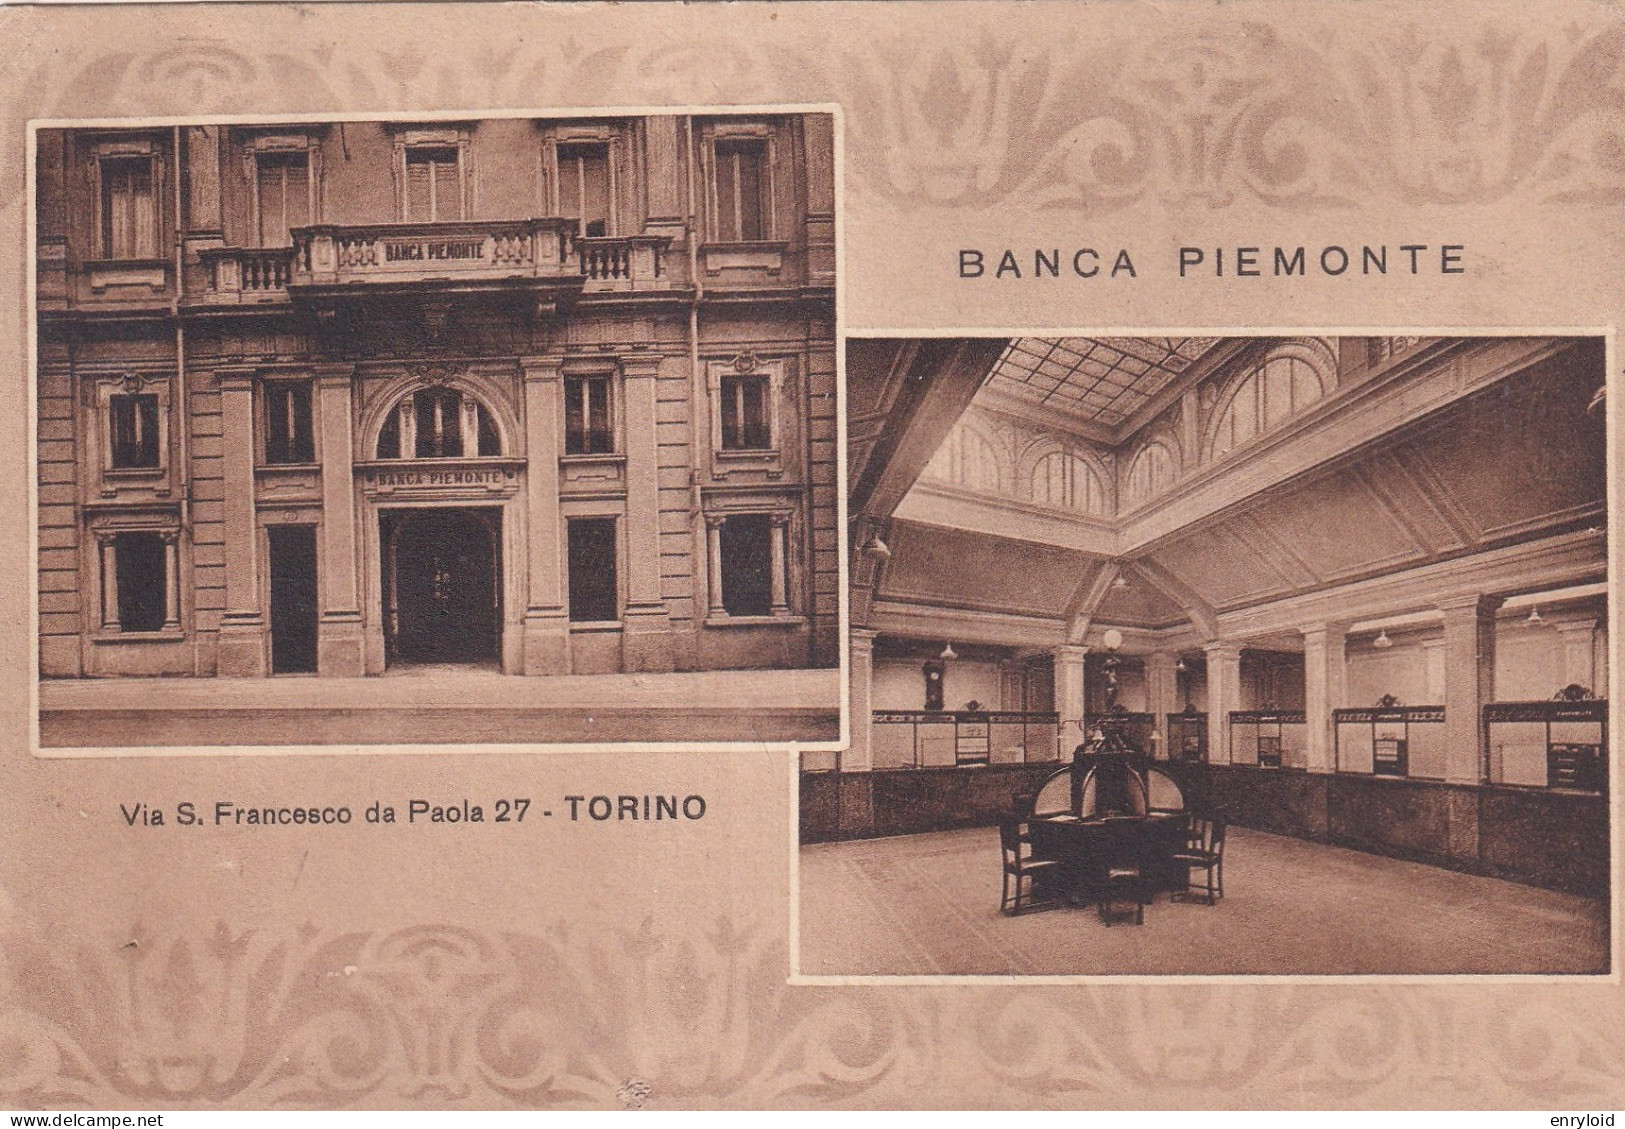 Banca Piemonte Torino - Andere Monumente & Gebäude